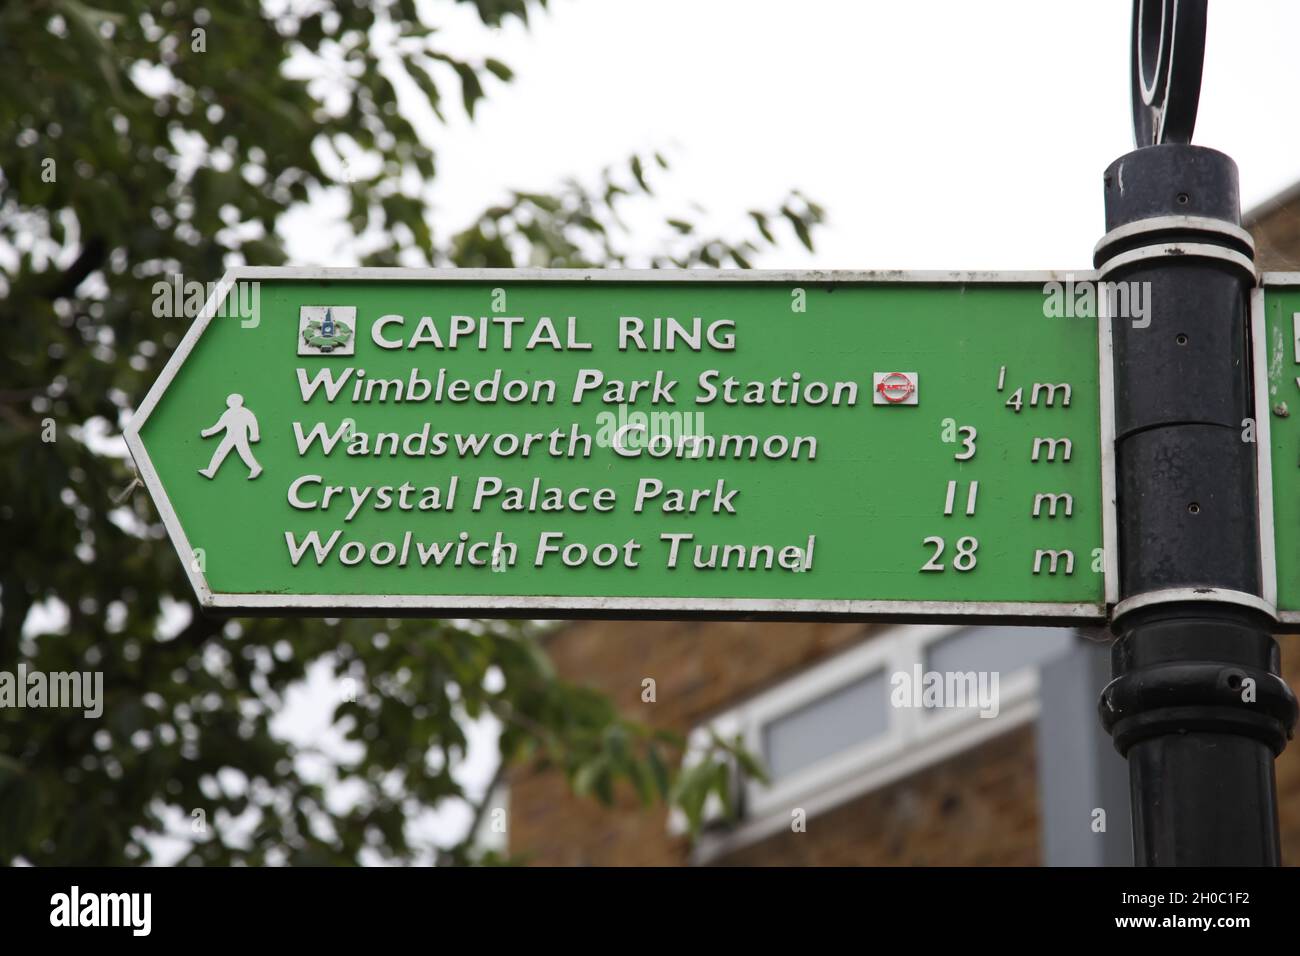 Cartel del parque Wimbledon para Capital Ring, estación, Wandsworth Common, Crystal Palace, túnel Woolwich Foot, Septiembre 2021 Foto de stock